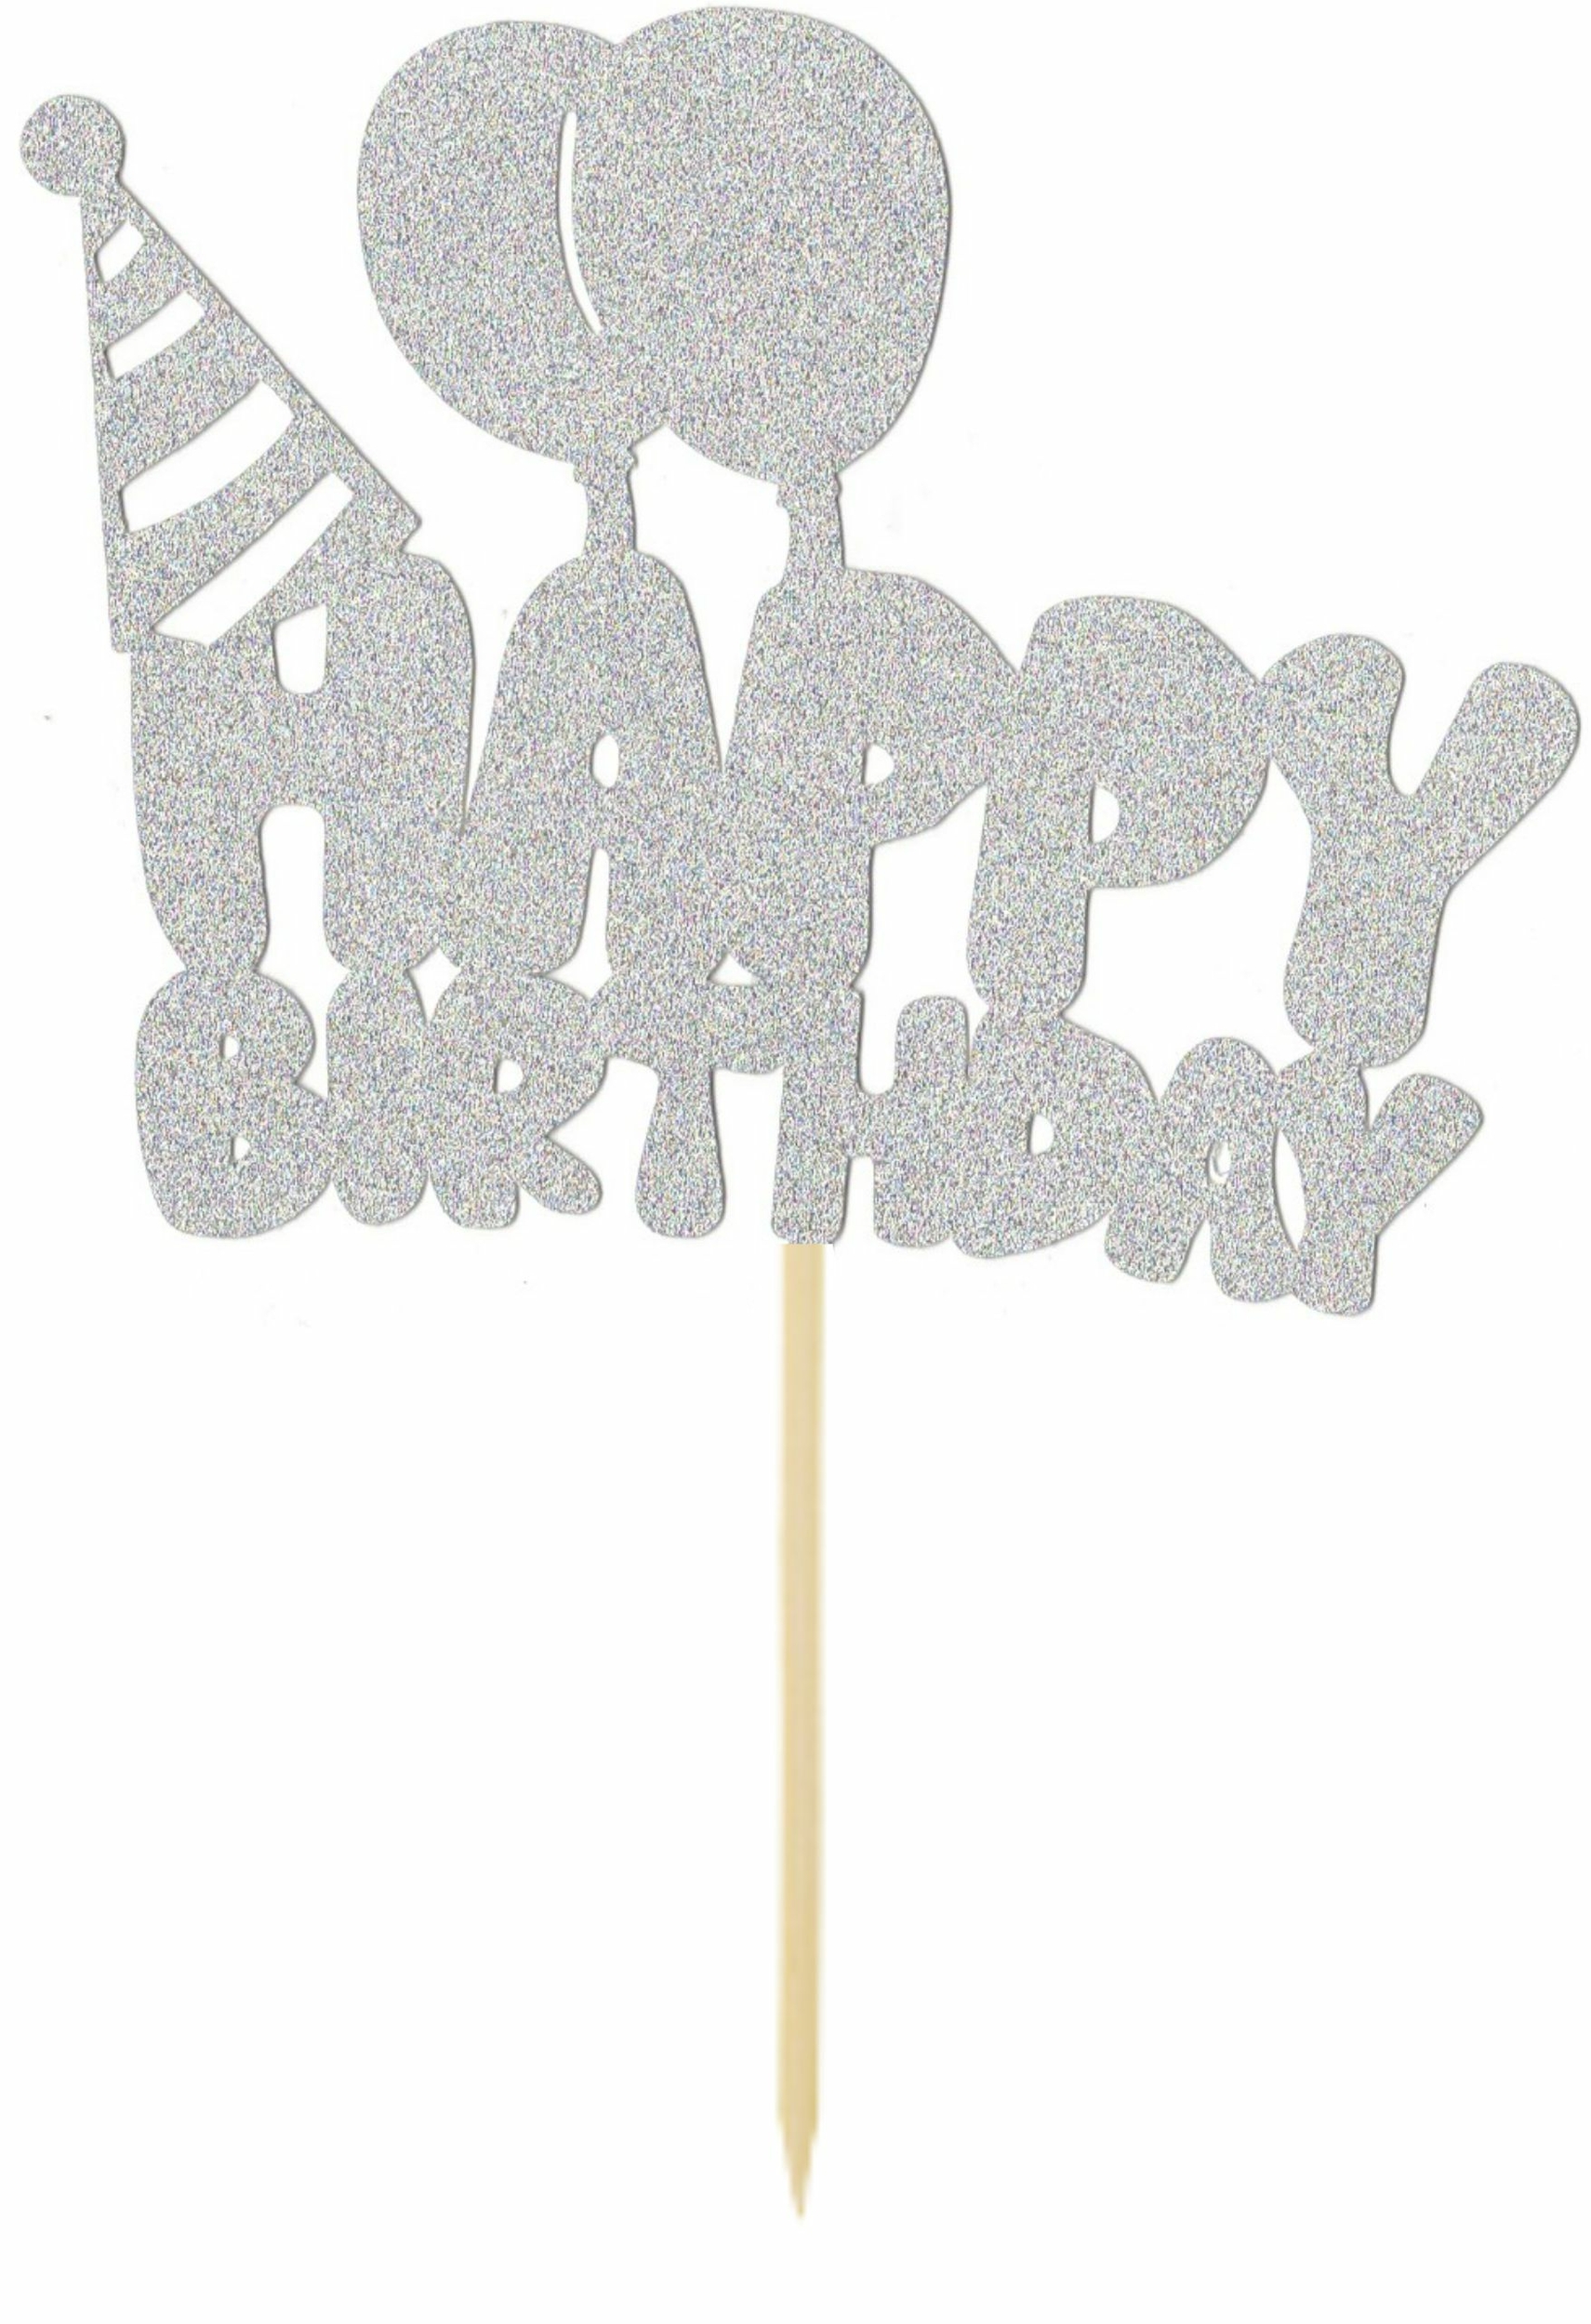 Cake topper Happy Birthday - bleu pailleté